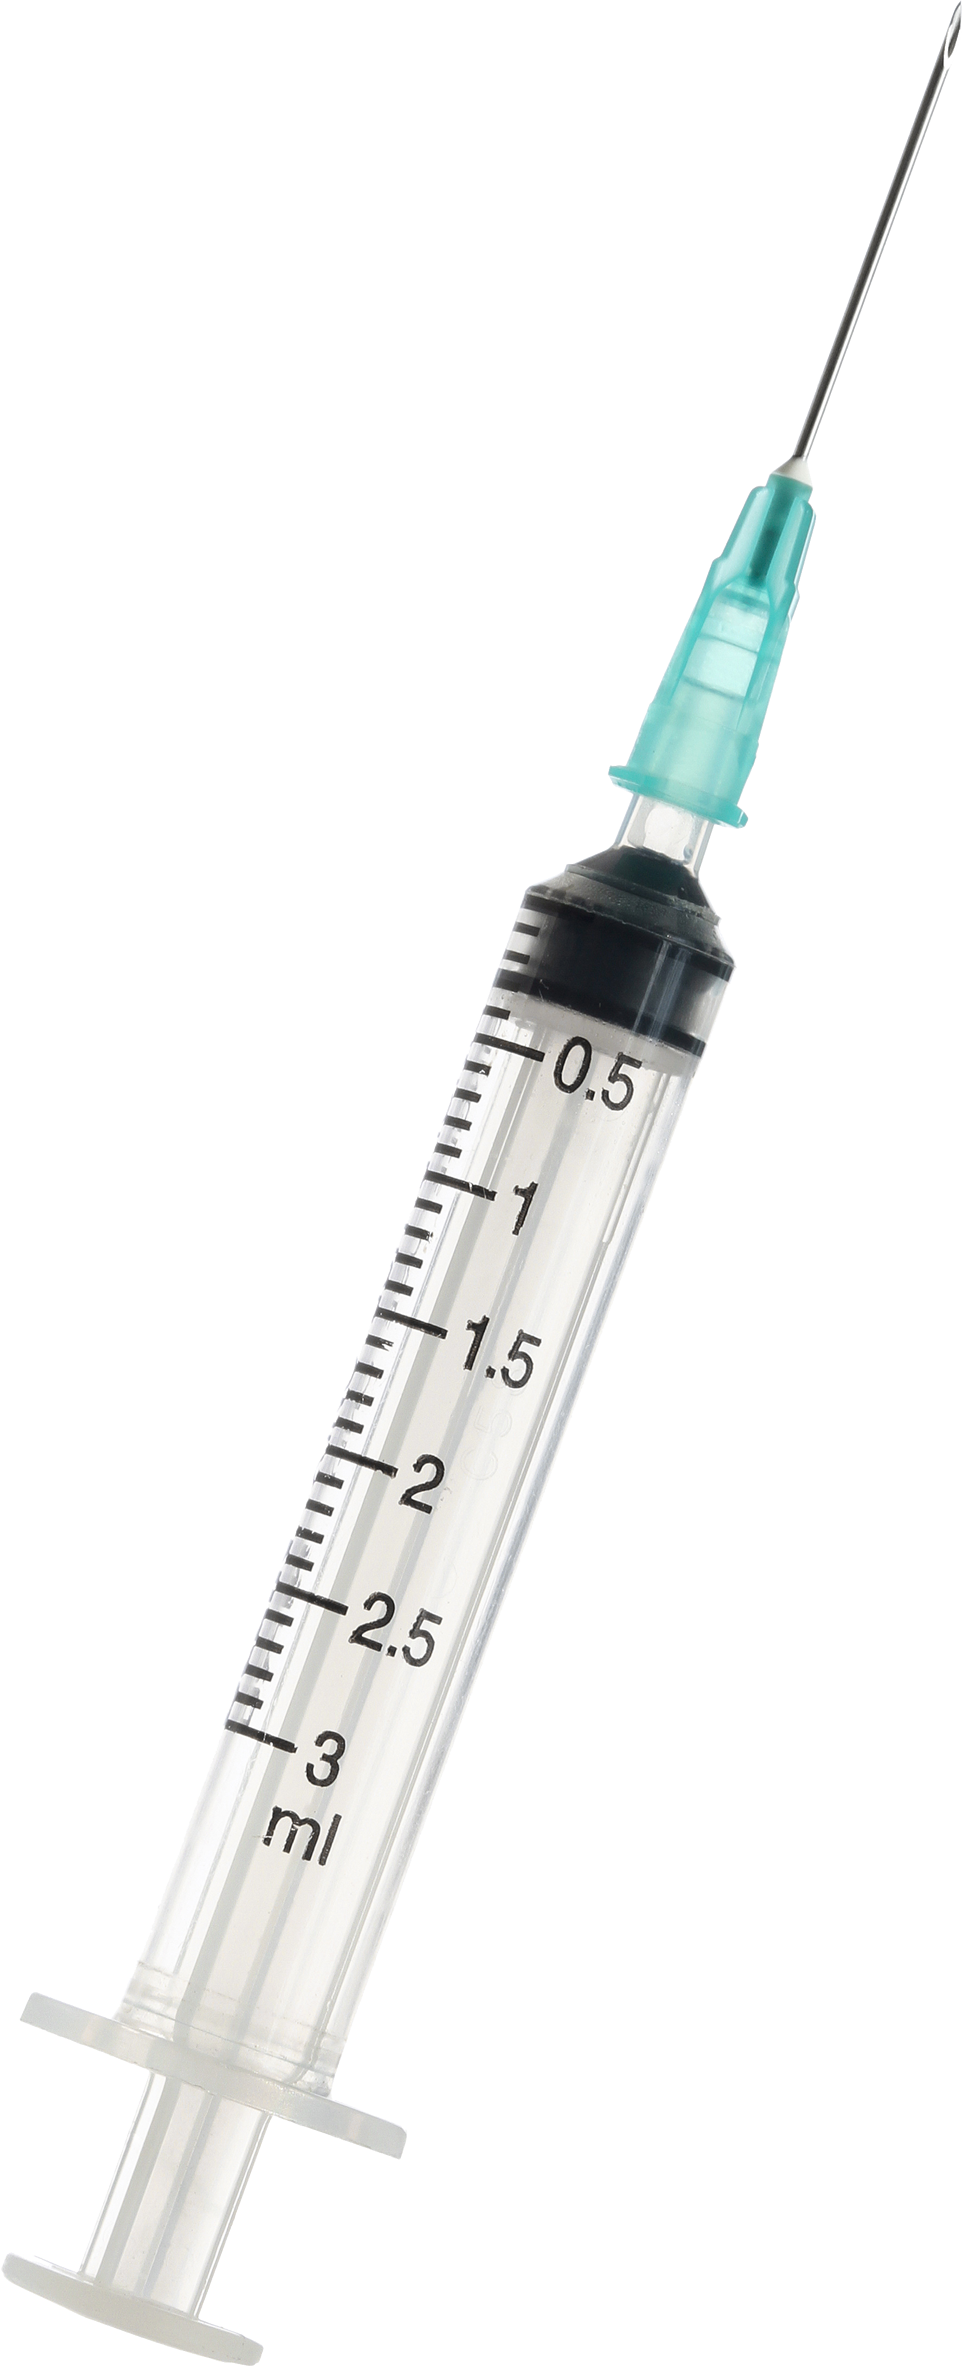 PNG Needle Syringe - 45308